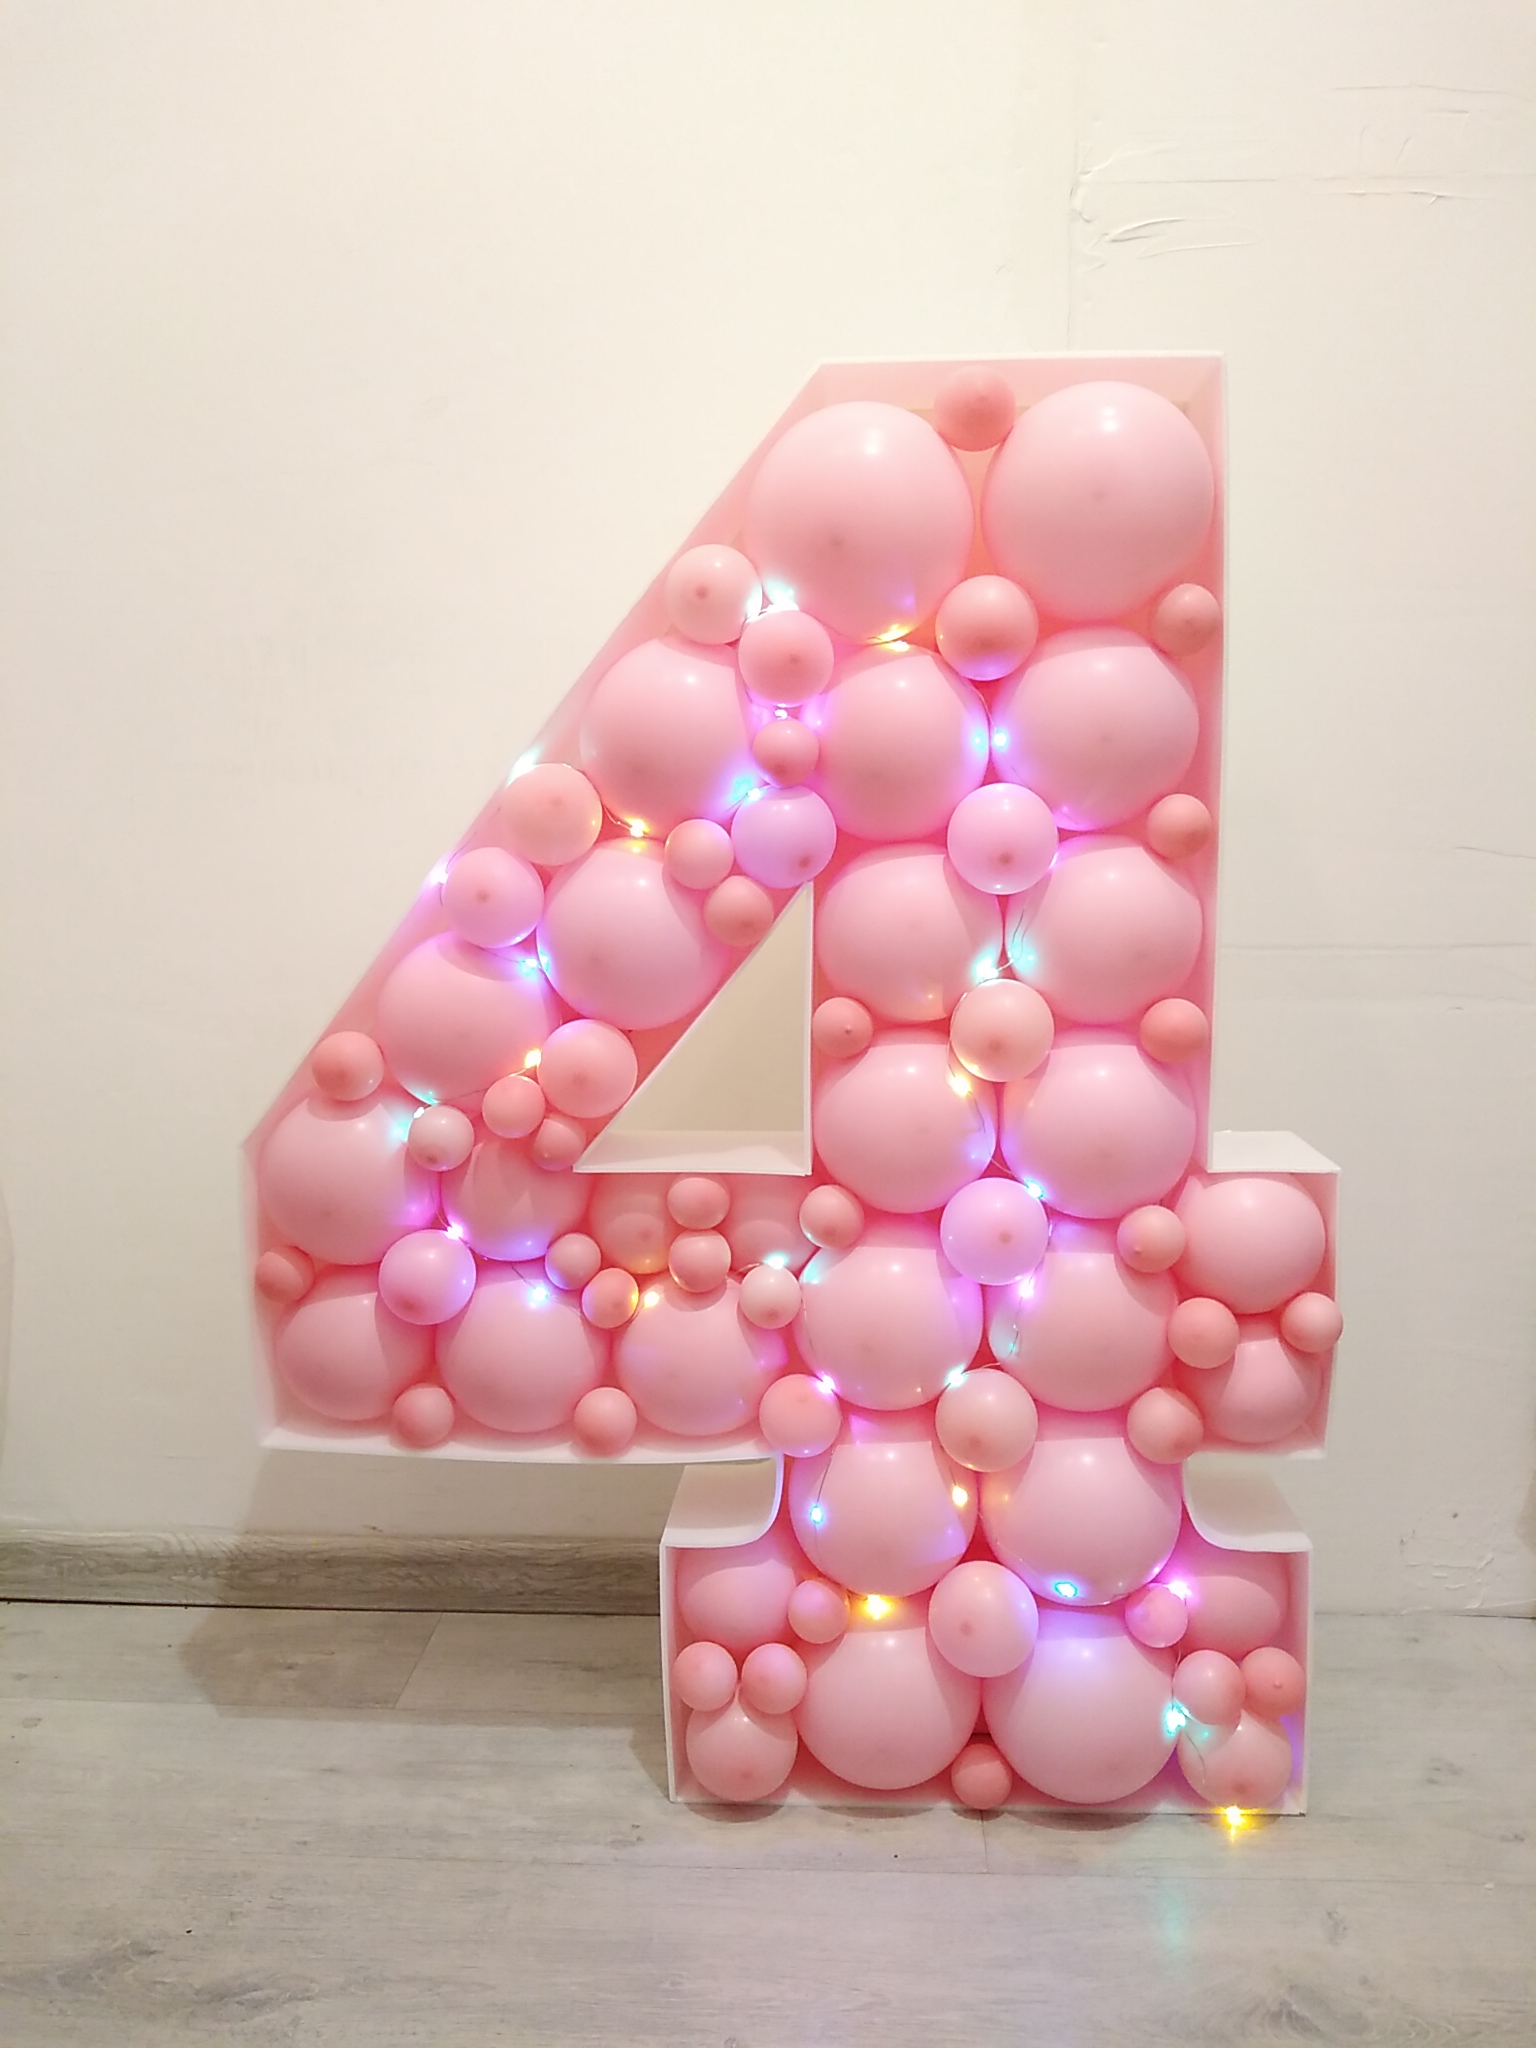 КАК СДЕЛАТЬ ВОСЬМЁРКУ цифру 8 ИЗ ВОЗДУШНЫХ ШАРОВ своими руками Balloon Number 8 eight TUTORIAL